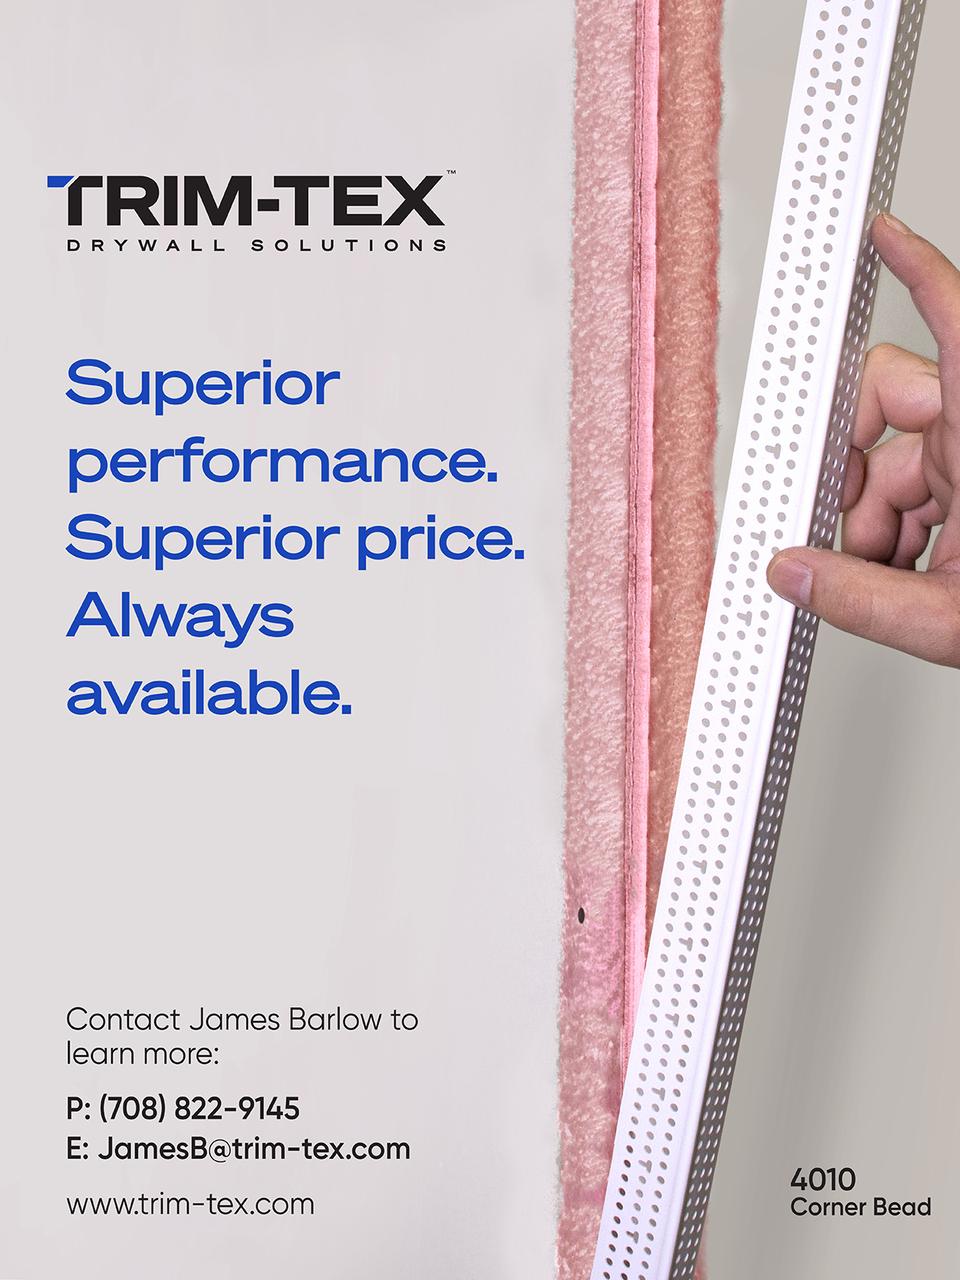 Trim-Tex, Inc.